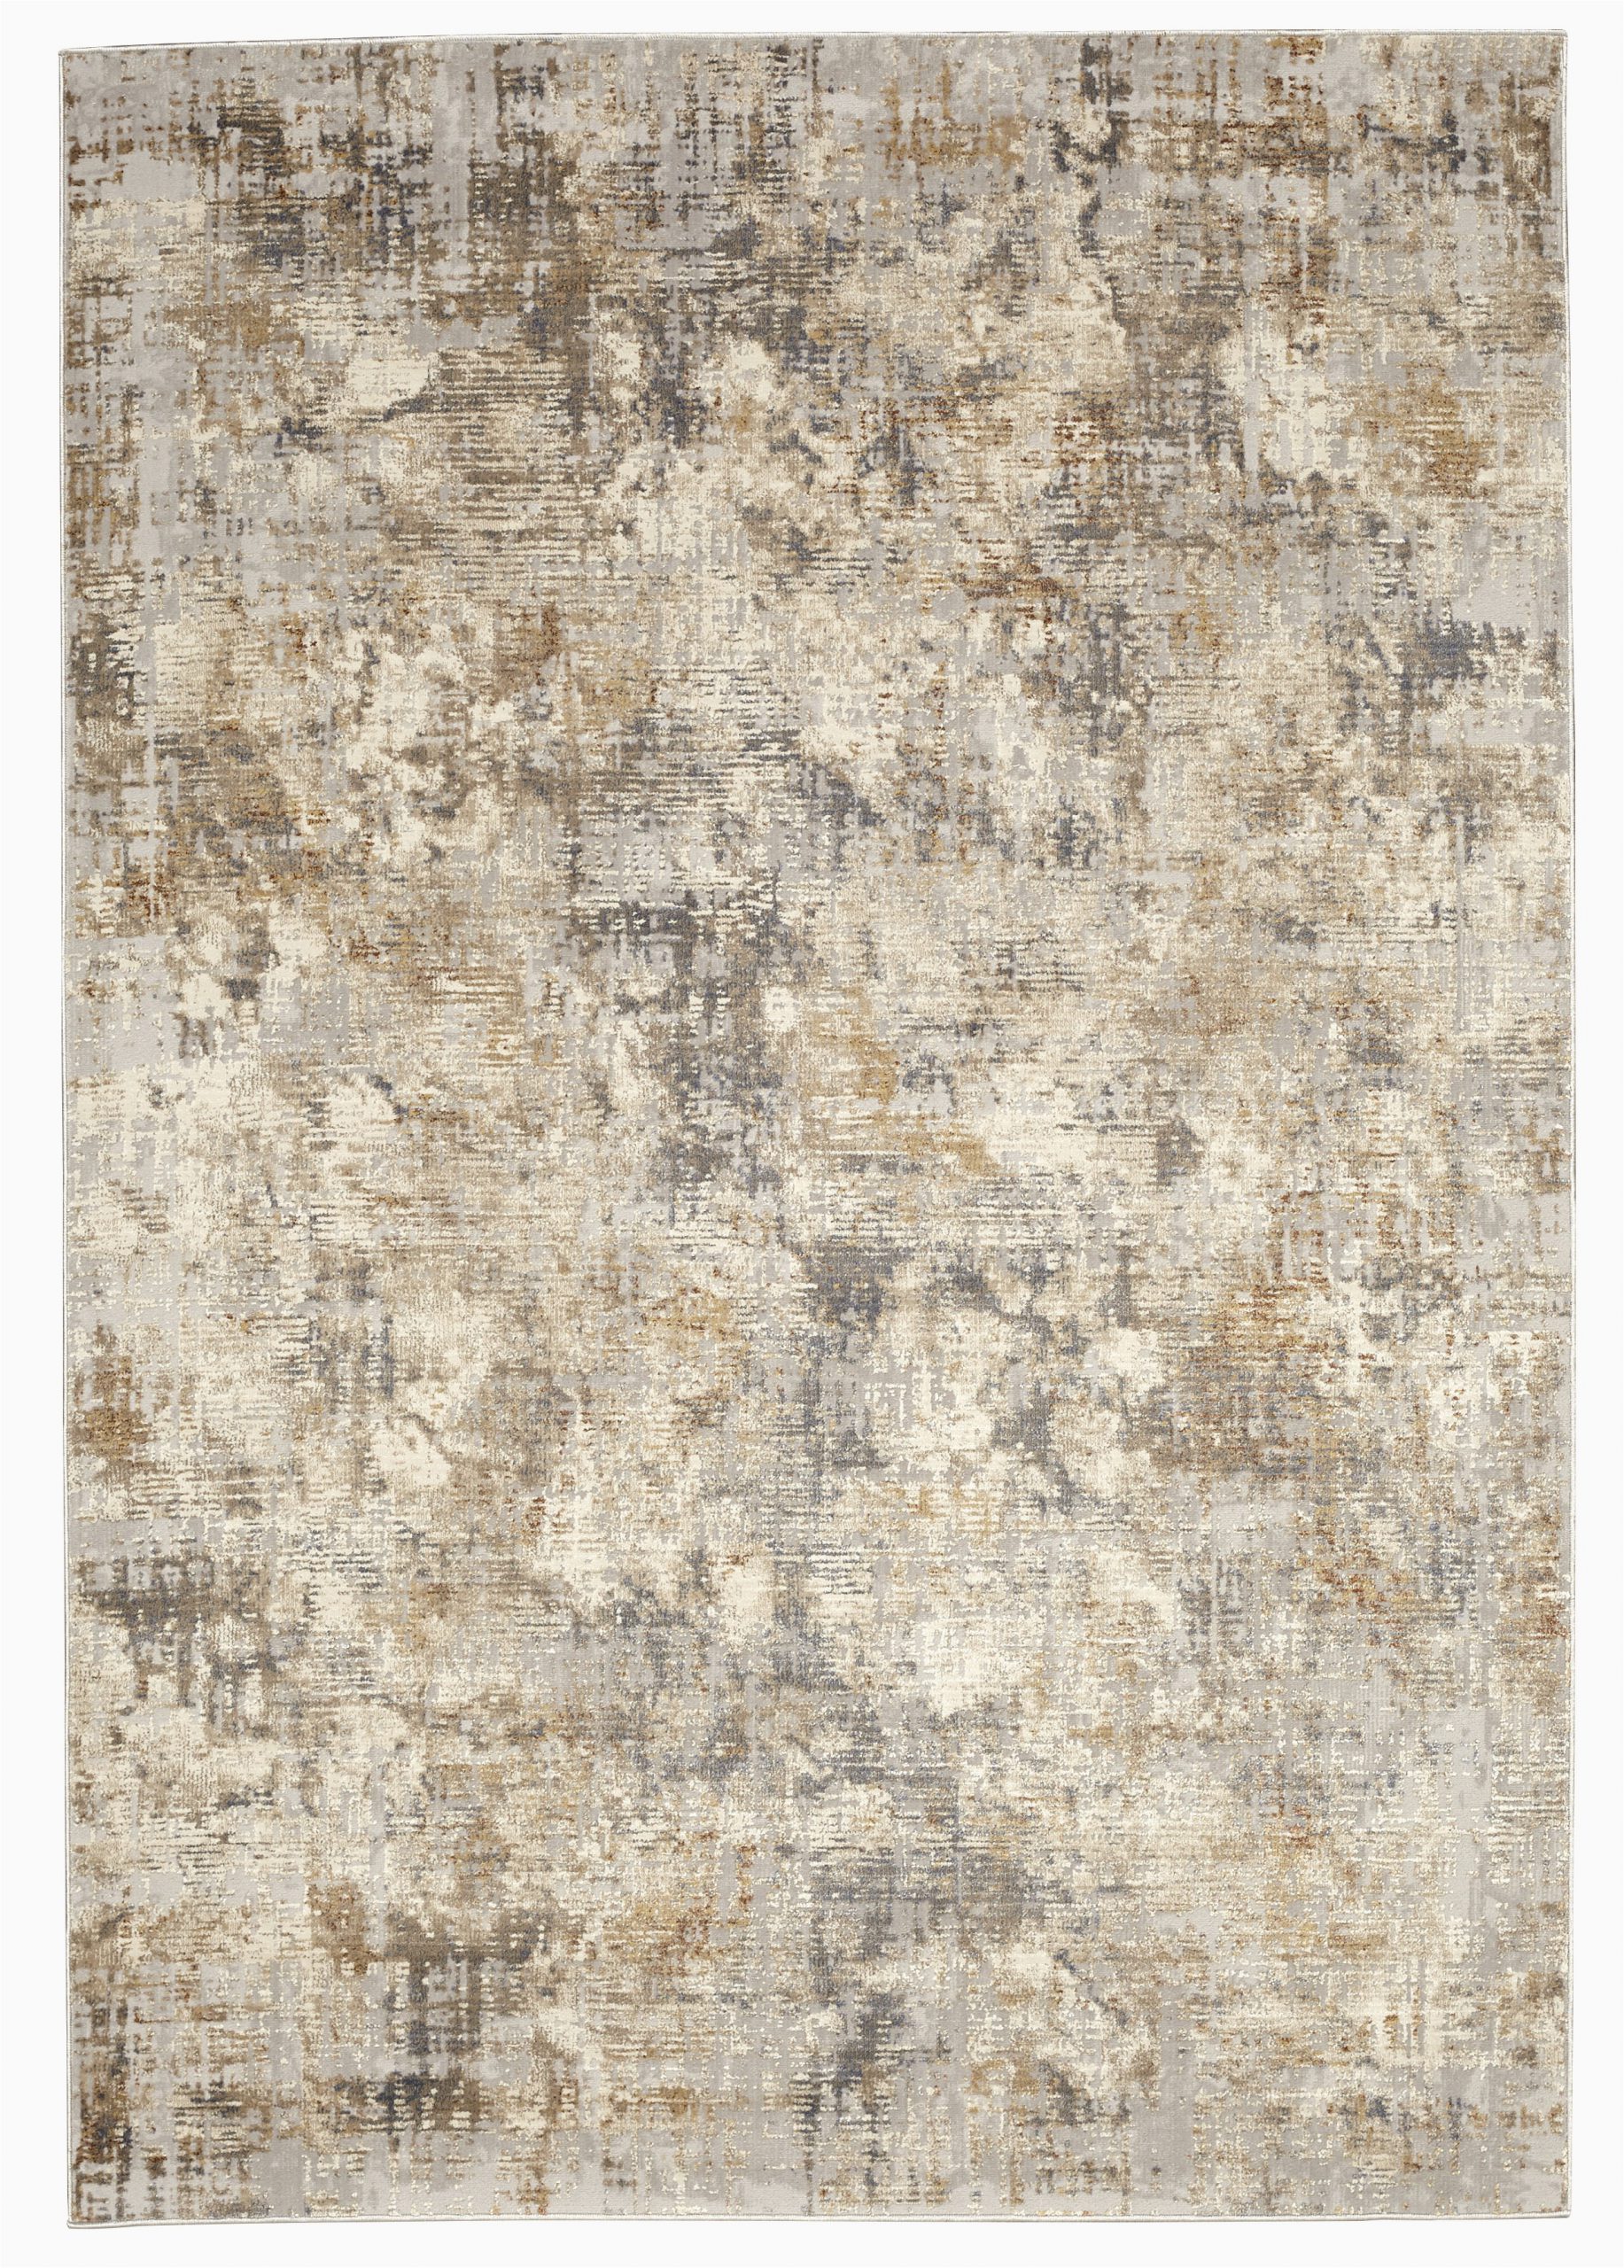 woodward soft grey area rug